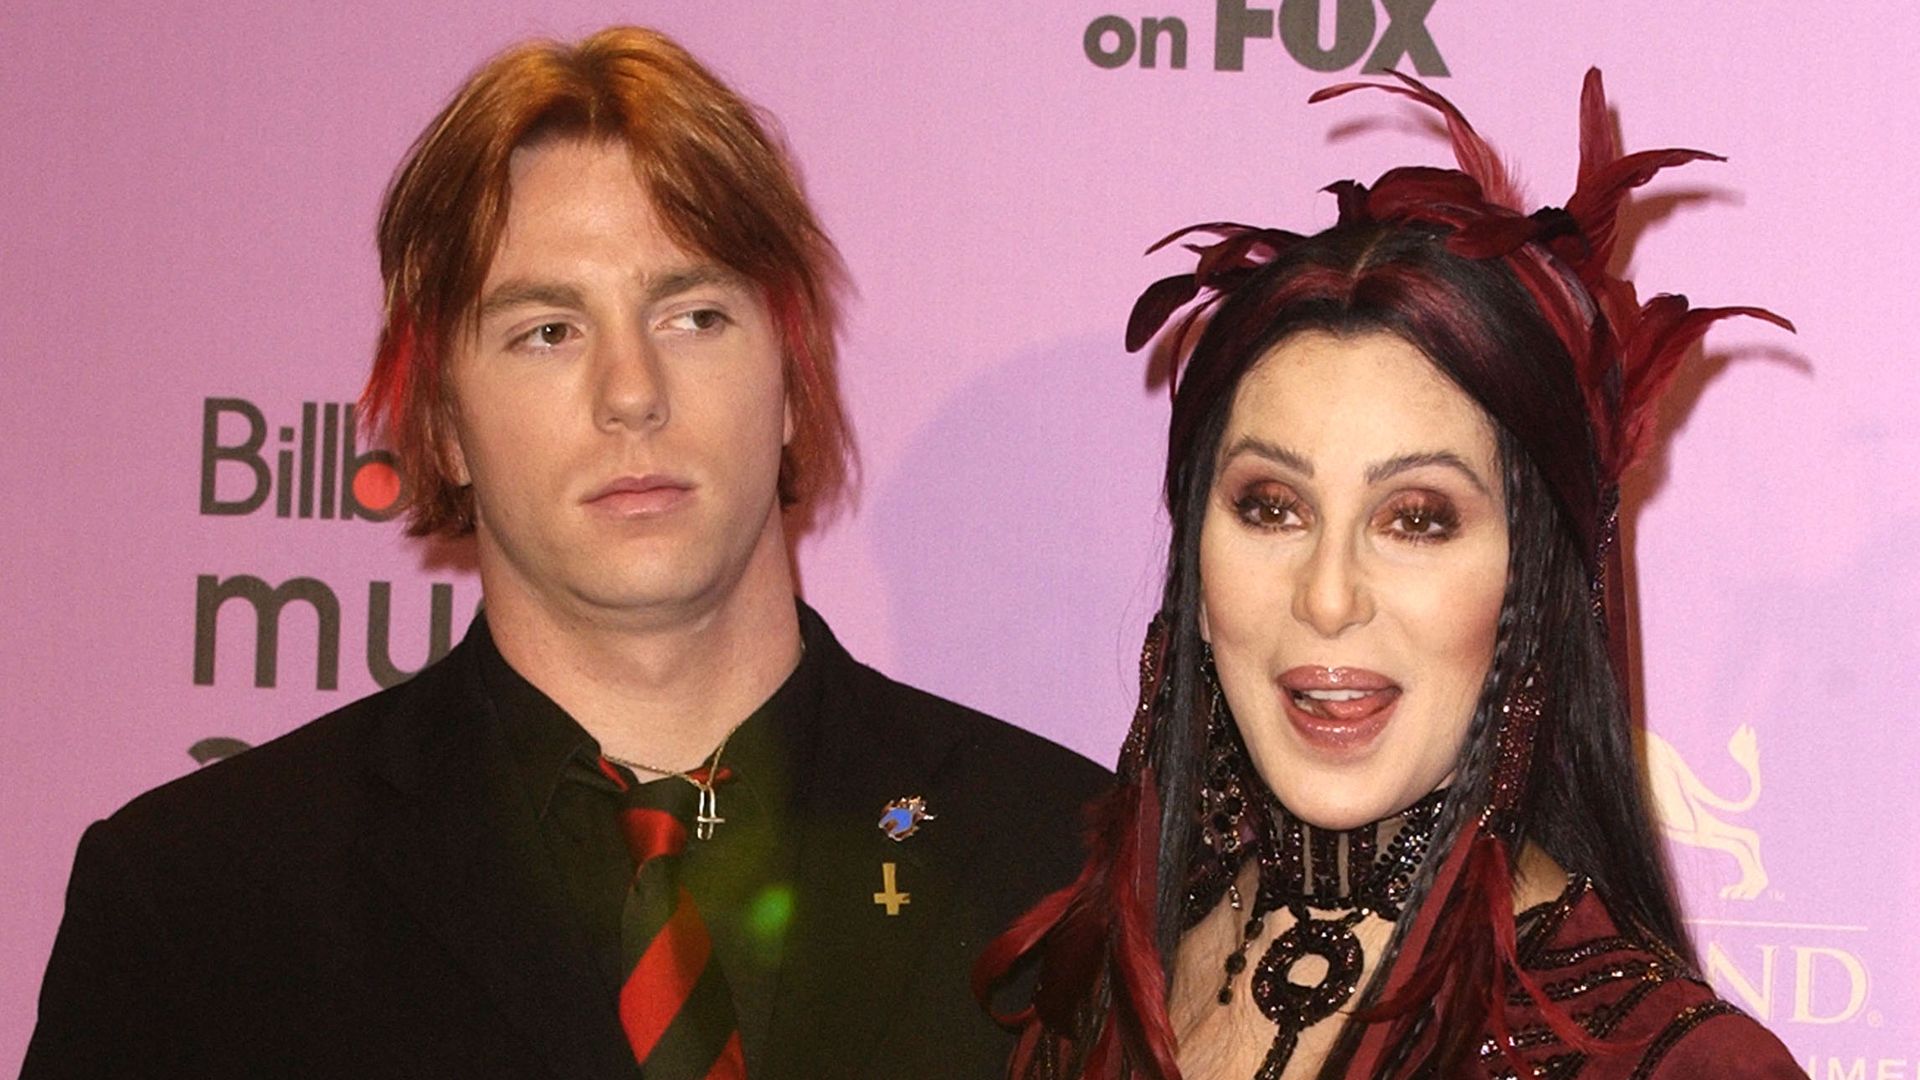 Cher's son Elijah Blue Allman's divorce is dismissed amid mom's conservatorship pursuit